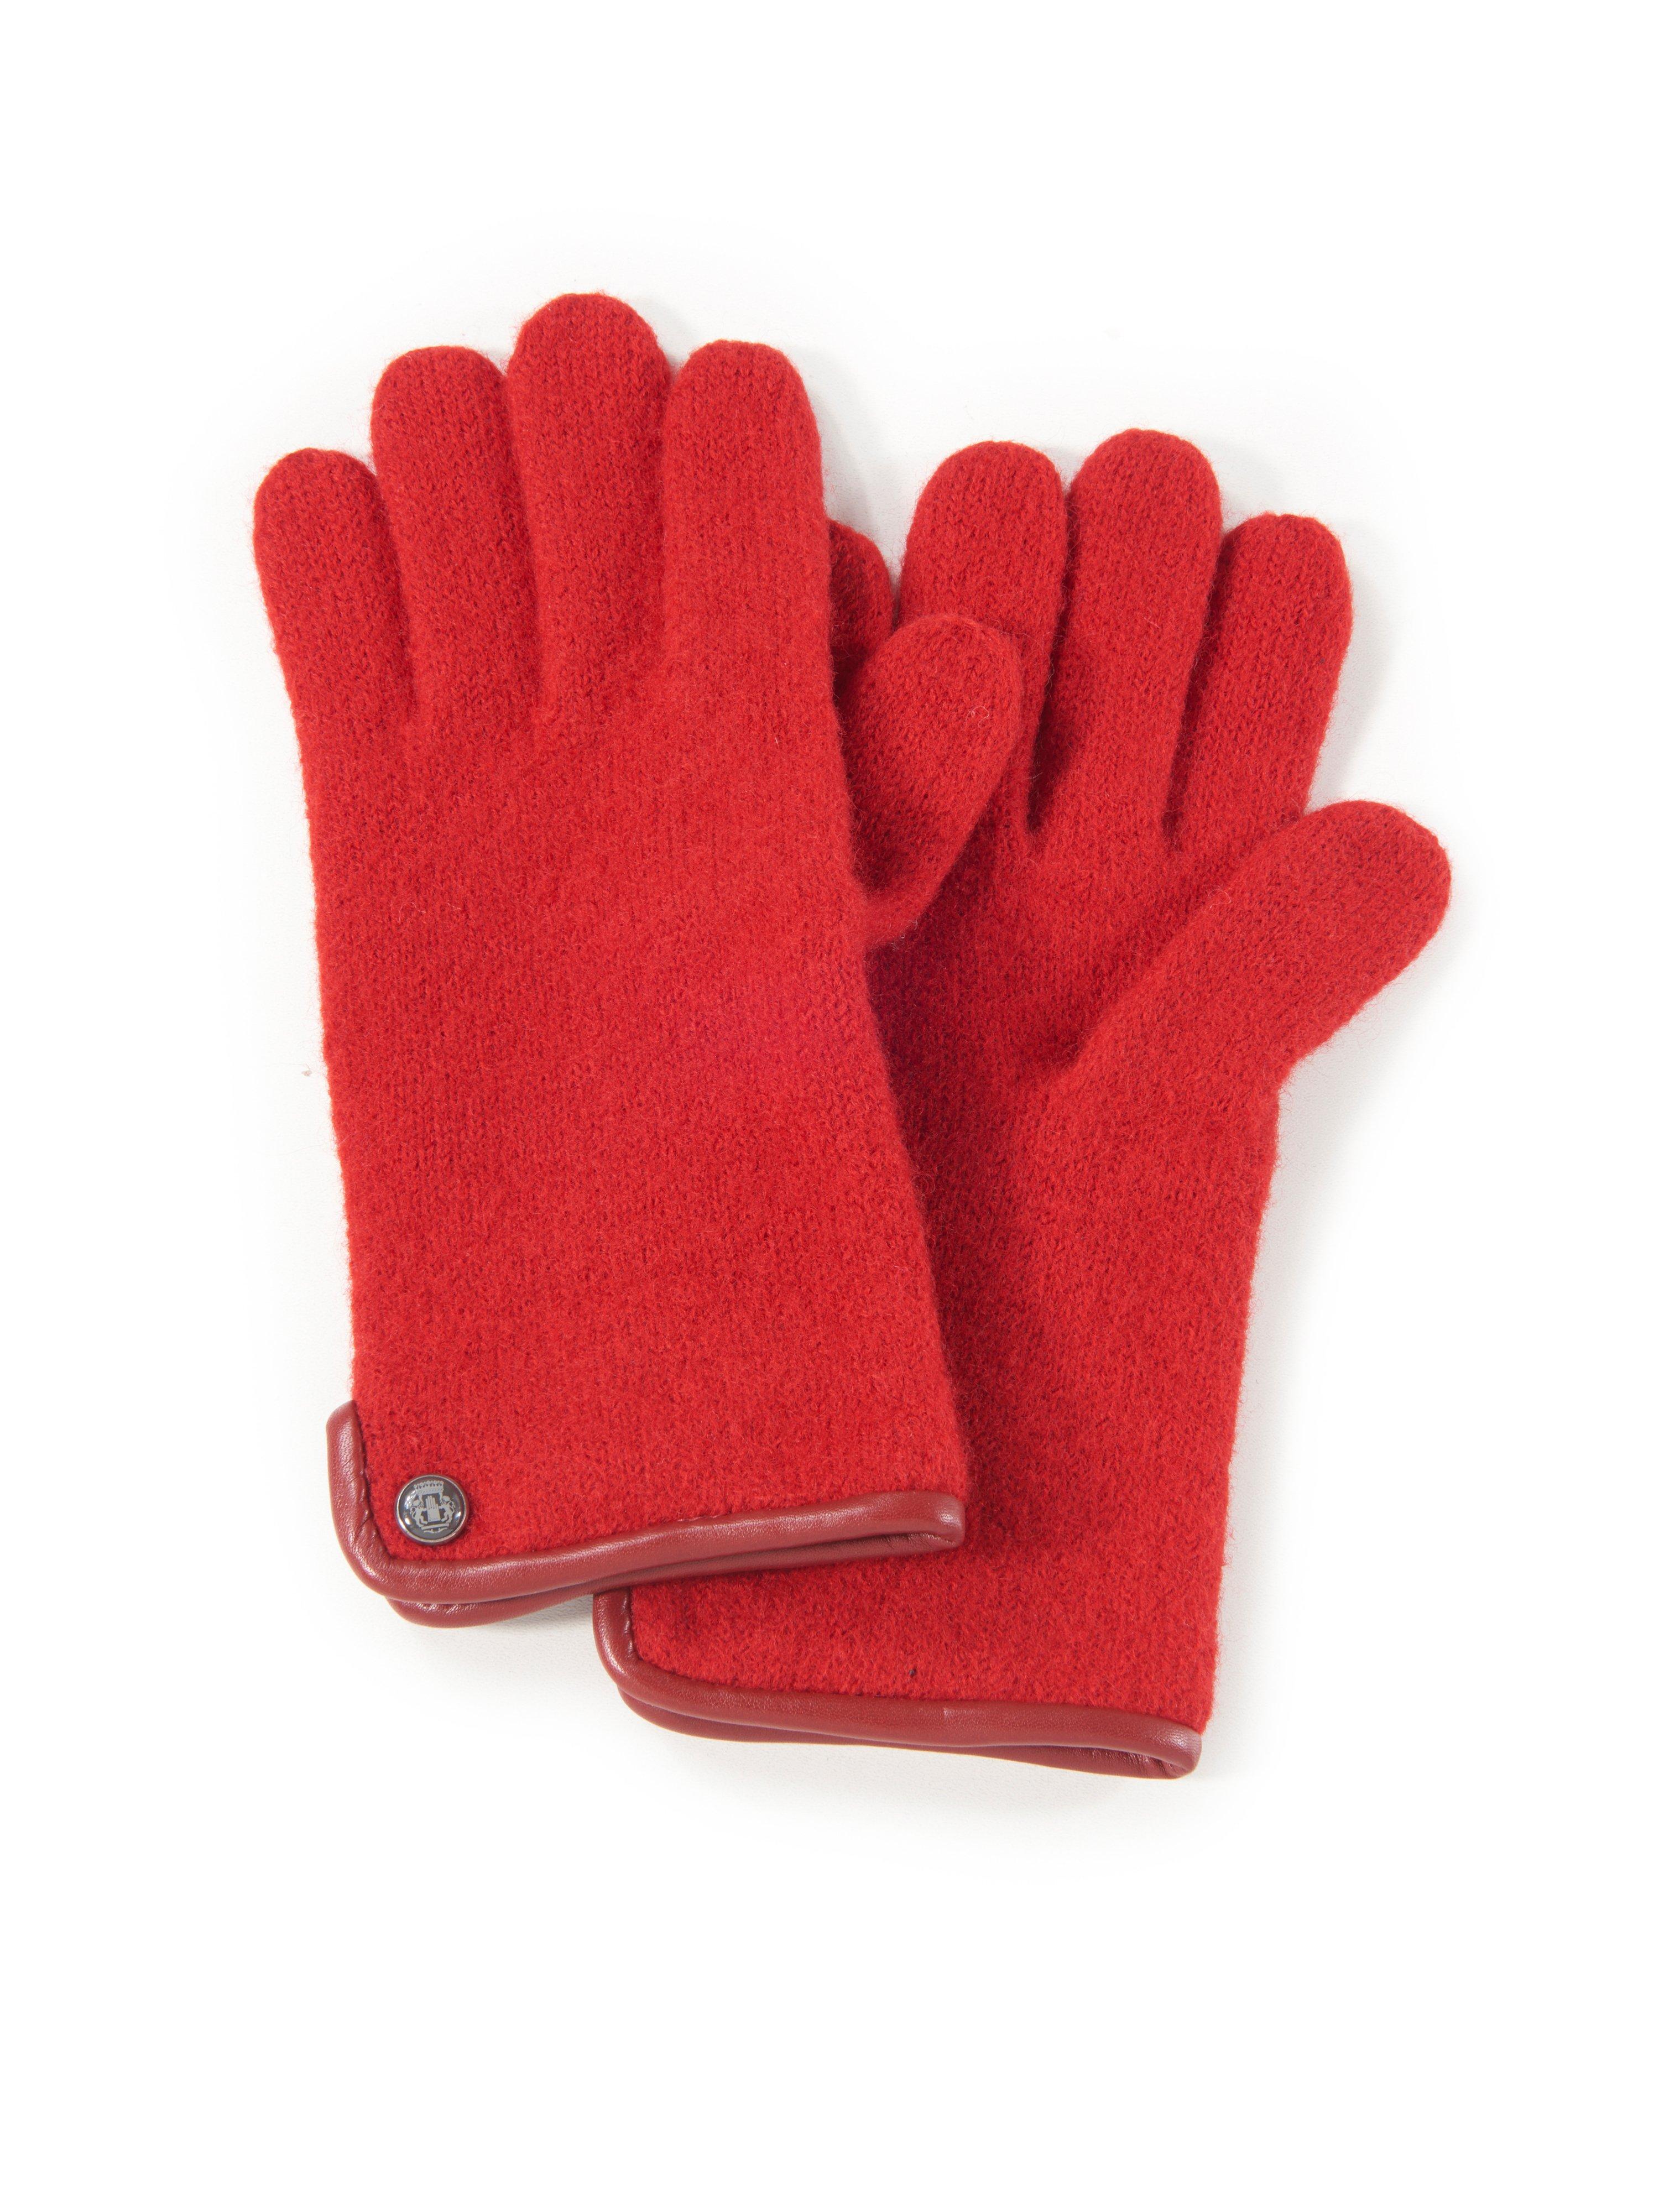 Handschoenen 100% scheerwol Van Roeckl rood